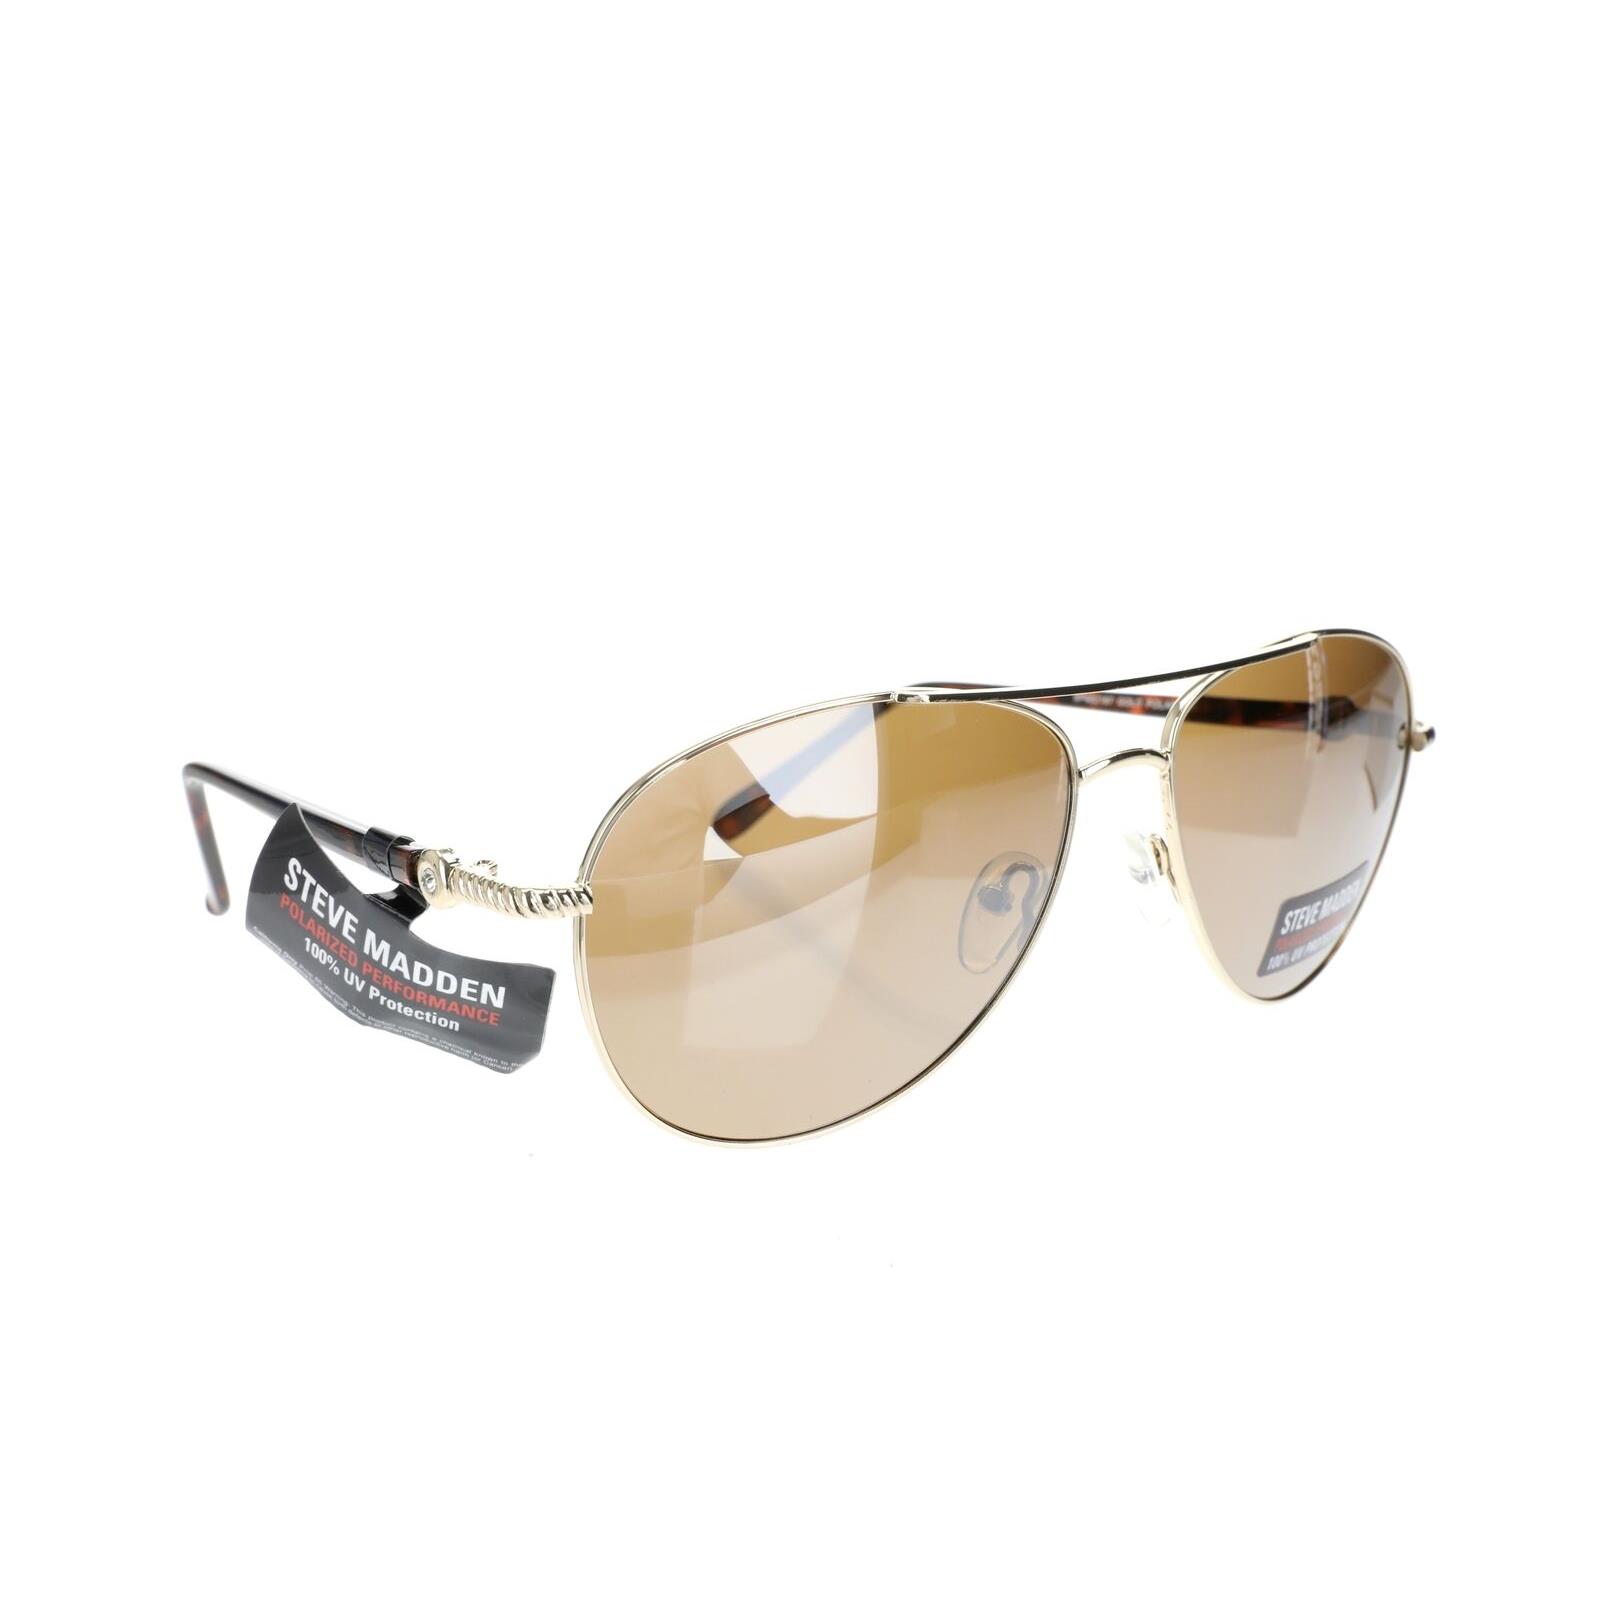 Steve Madden 255604 Womens Polarized Nina Pilot Sunglasses Gold Frame/brown